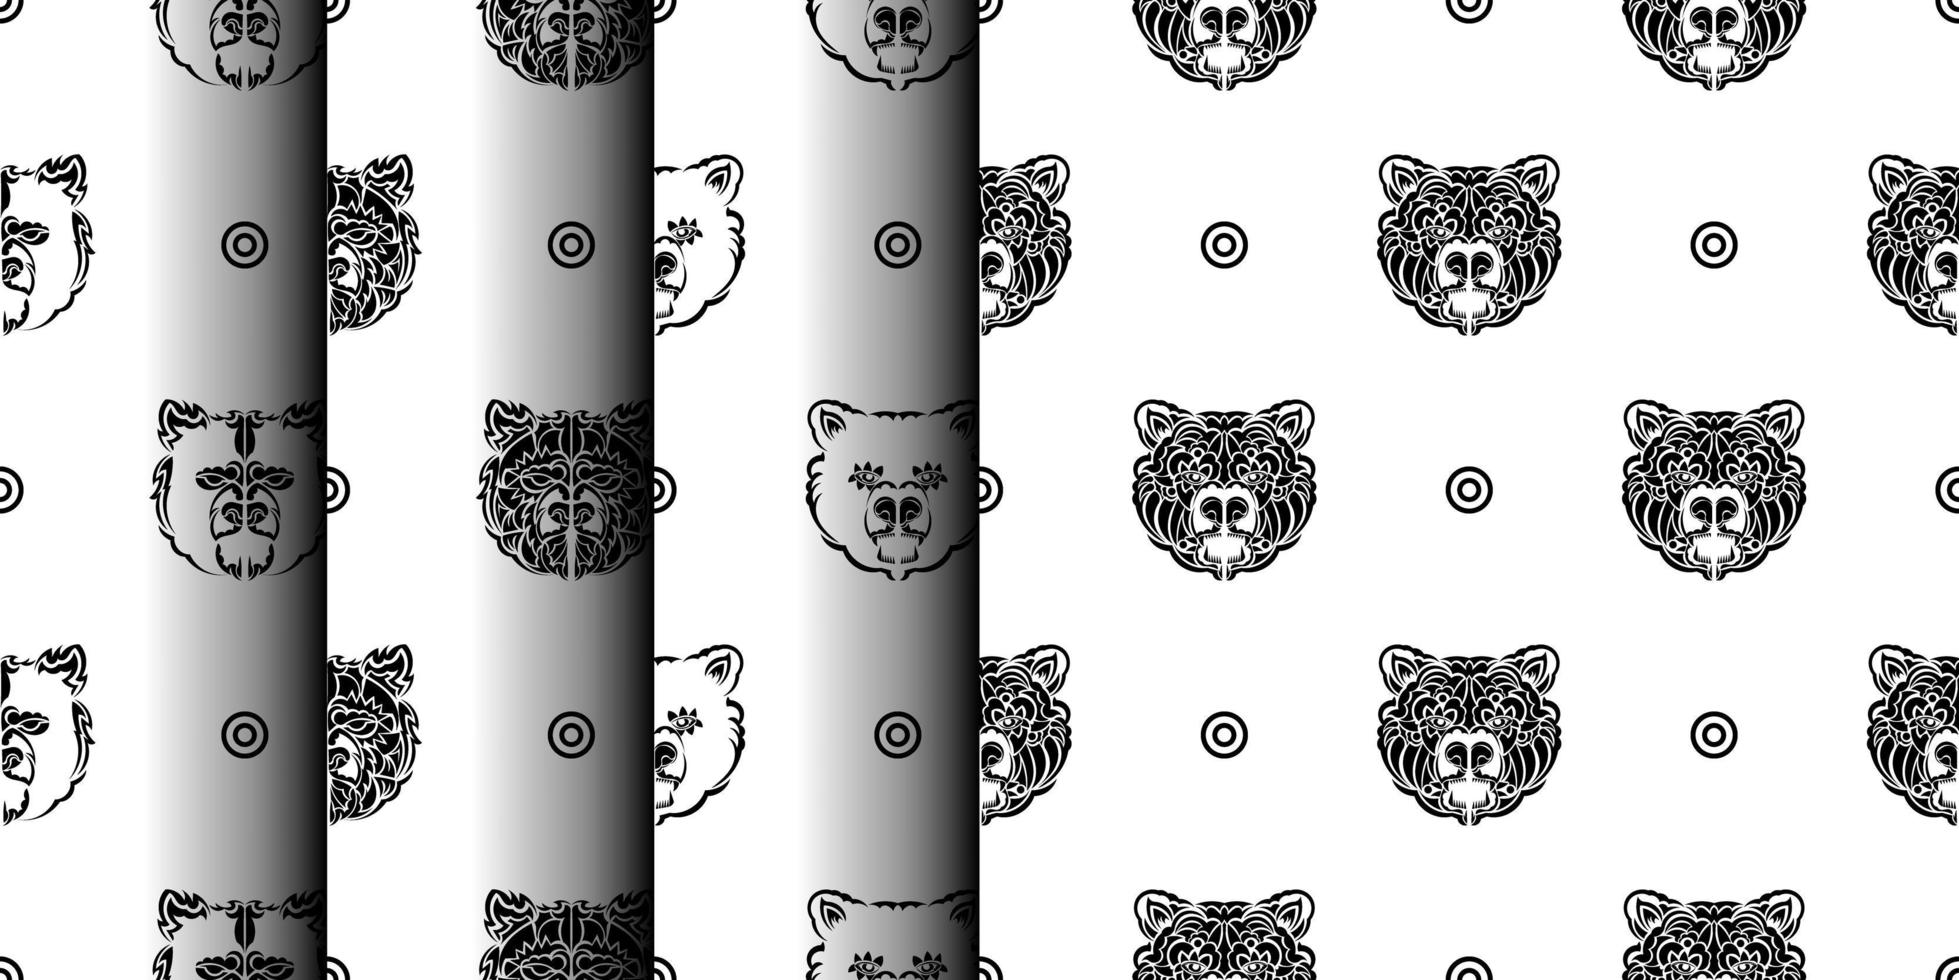 uppsättning av svart-vita sömlösa mönster med björn ansikte. bra för bakgrunder, tryck, kläder och textilier. vektor illustration.